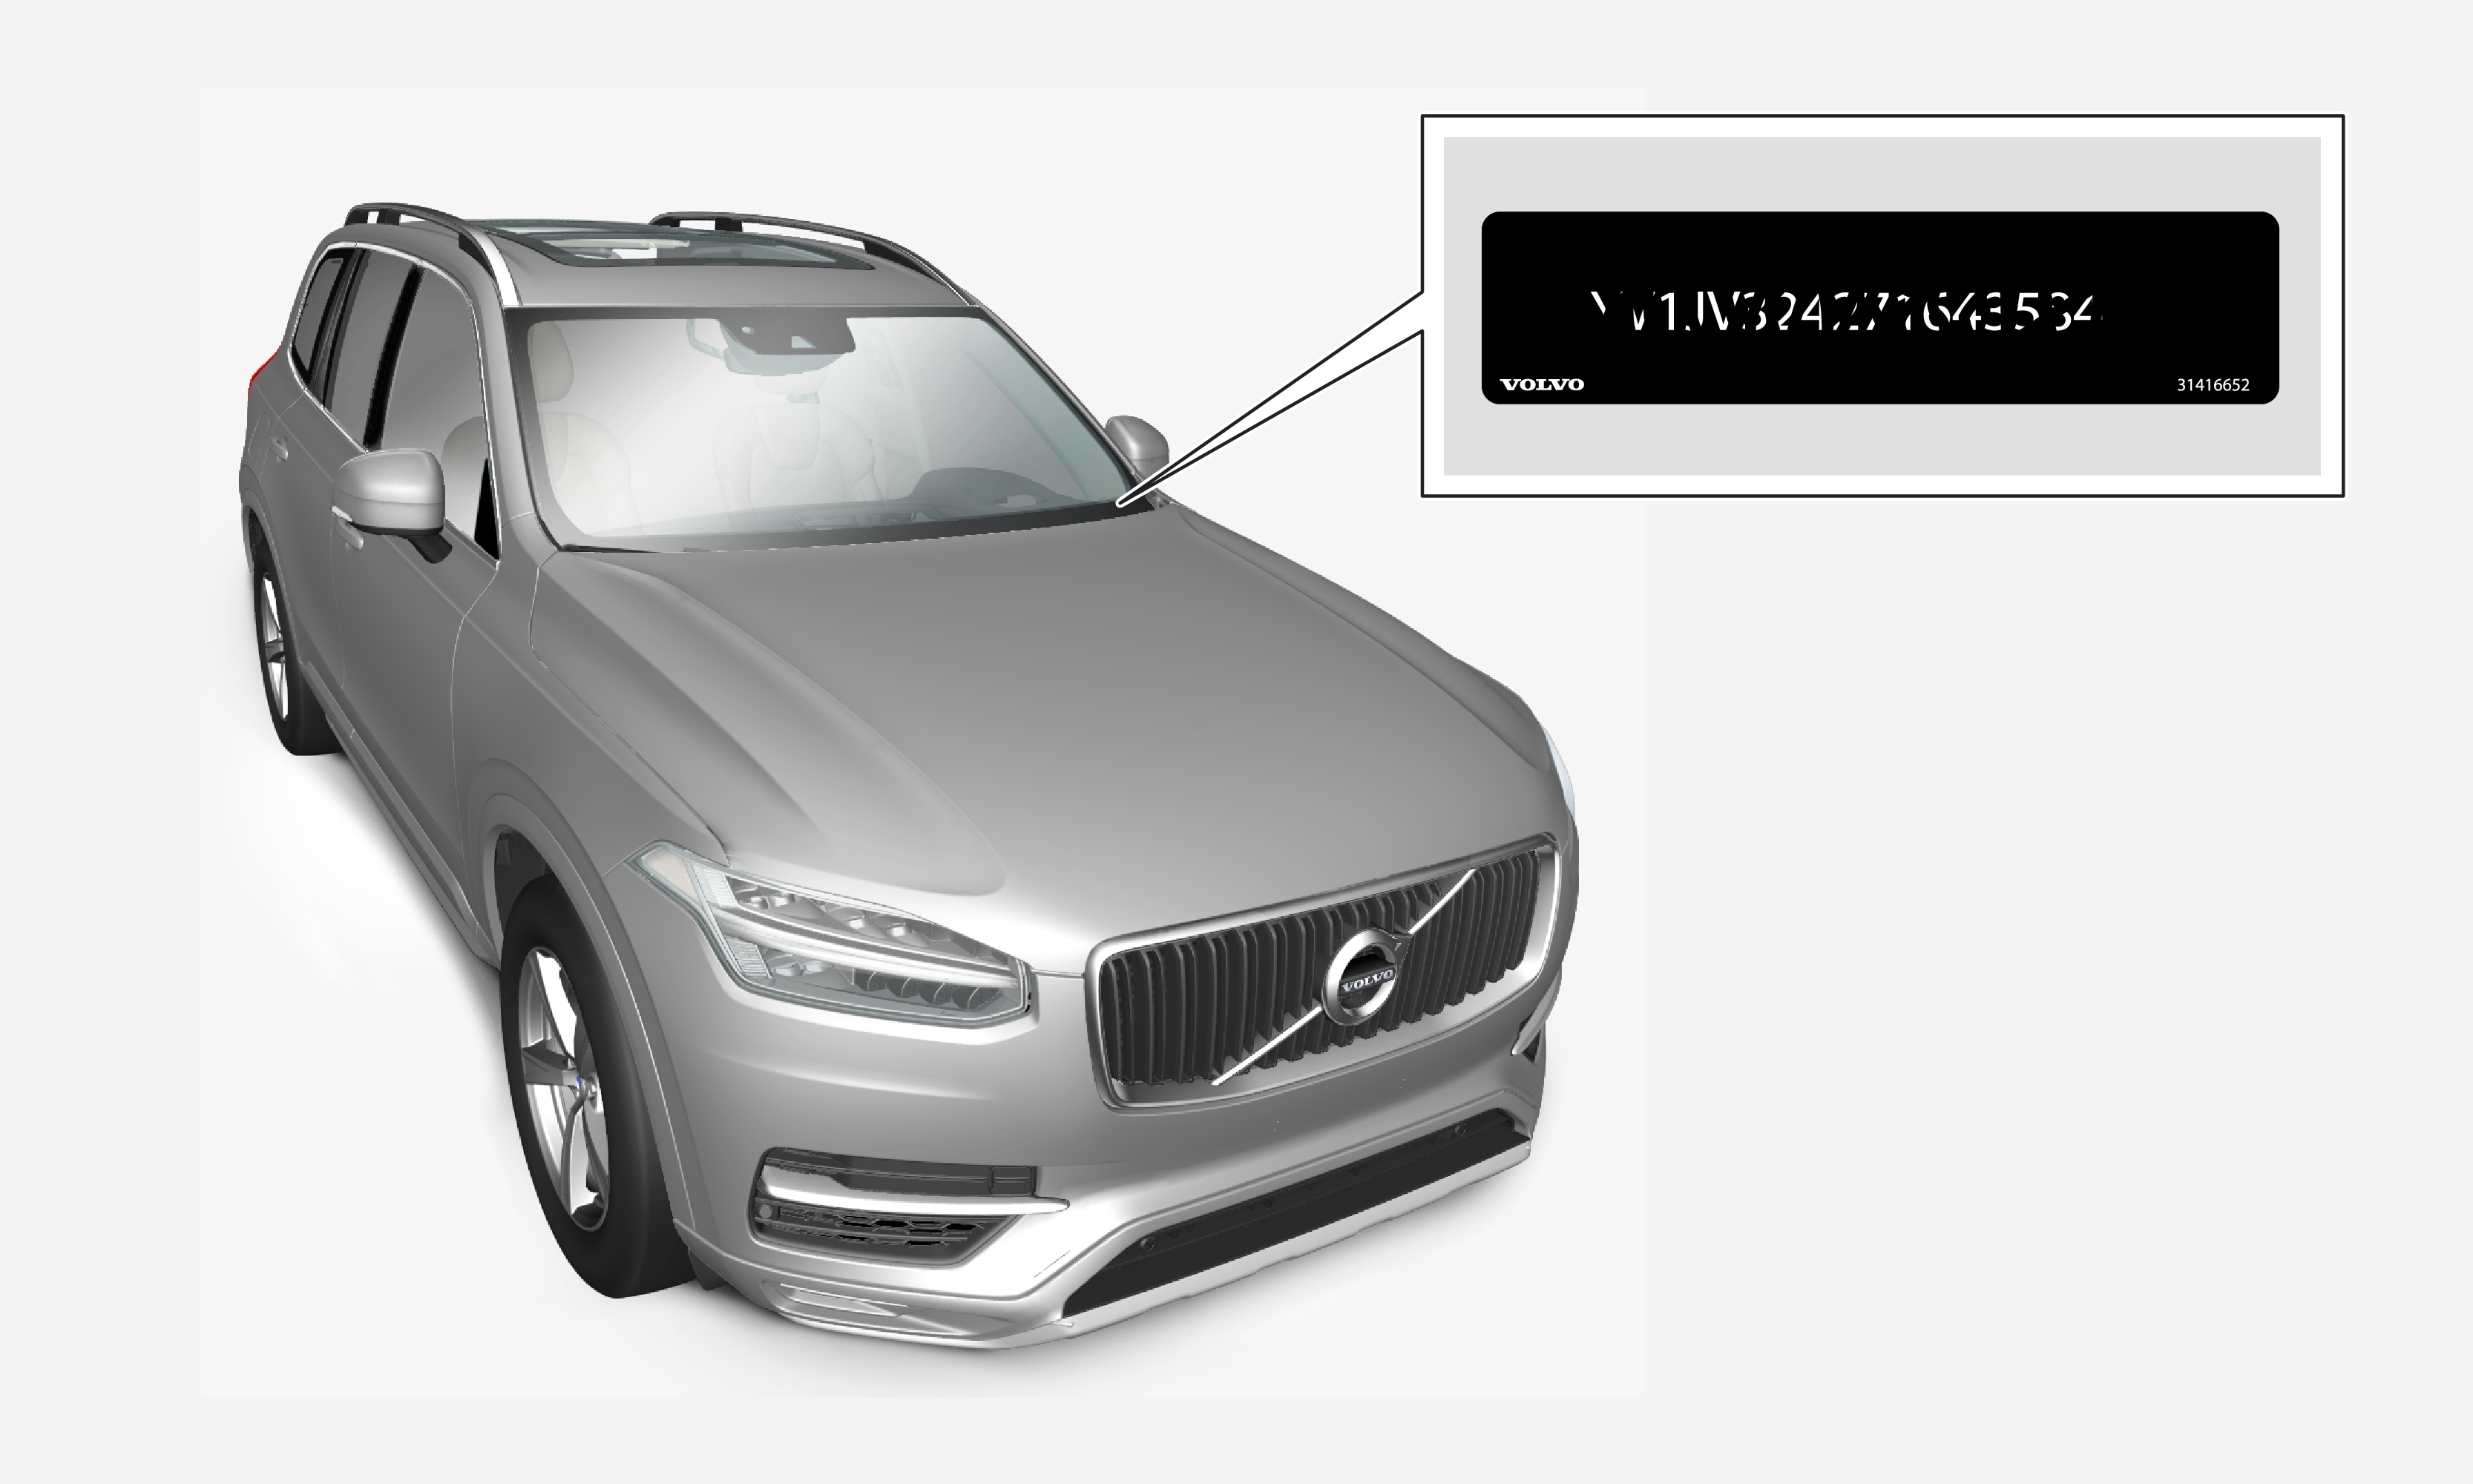 Manie raket Van Volvo Cars - Het VIN (Vehicle Identification Number) van de auto vinden